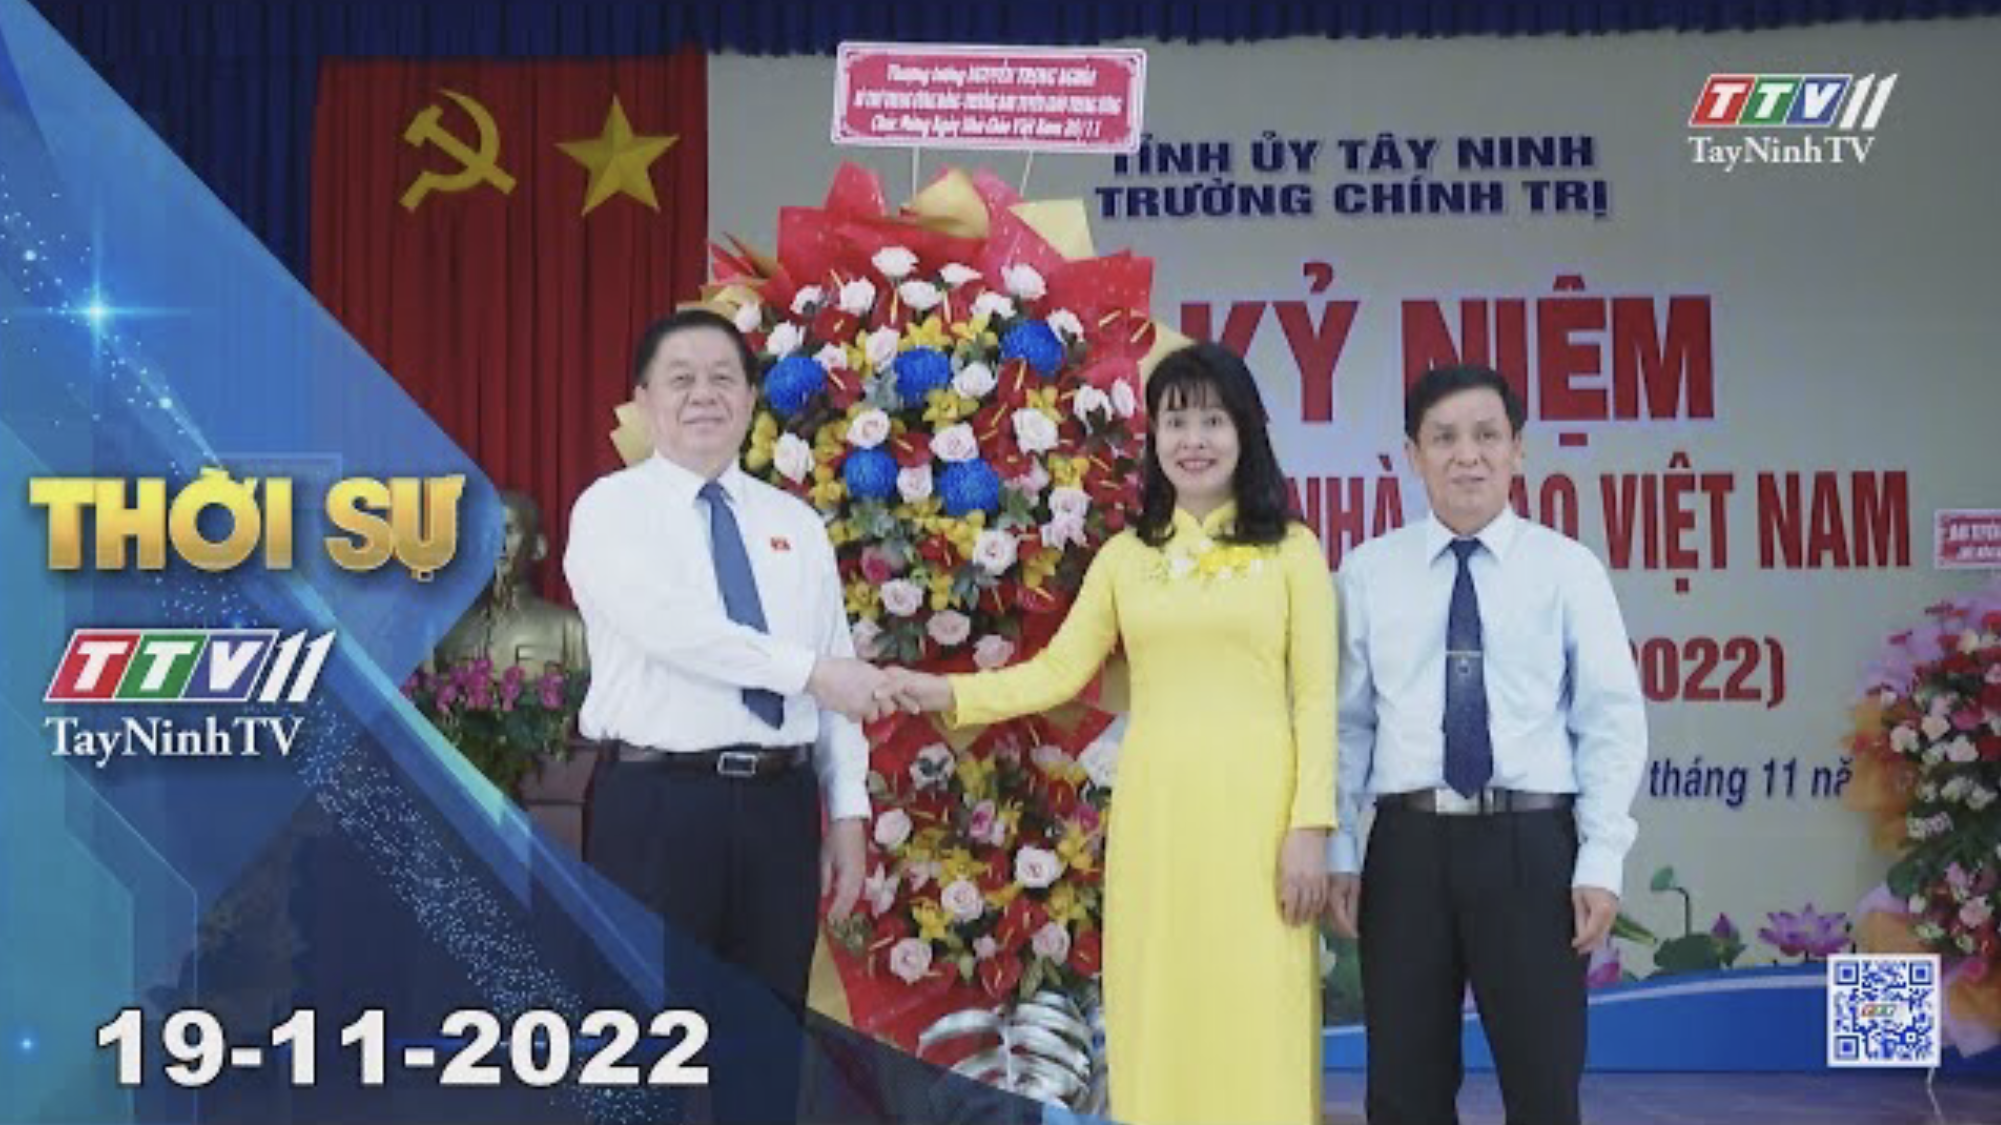 Thời sự Tây Ninh 19-11-2022 | Tin tức hôm nay | TayNinhTV